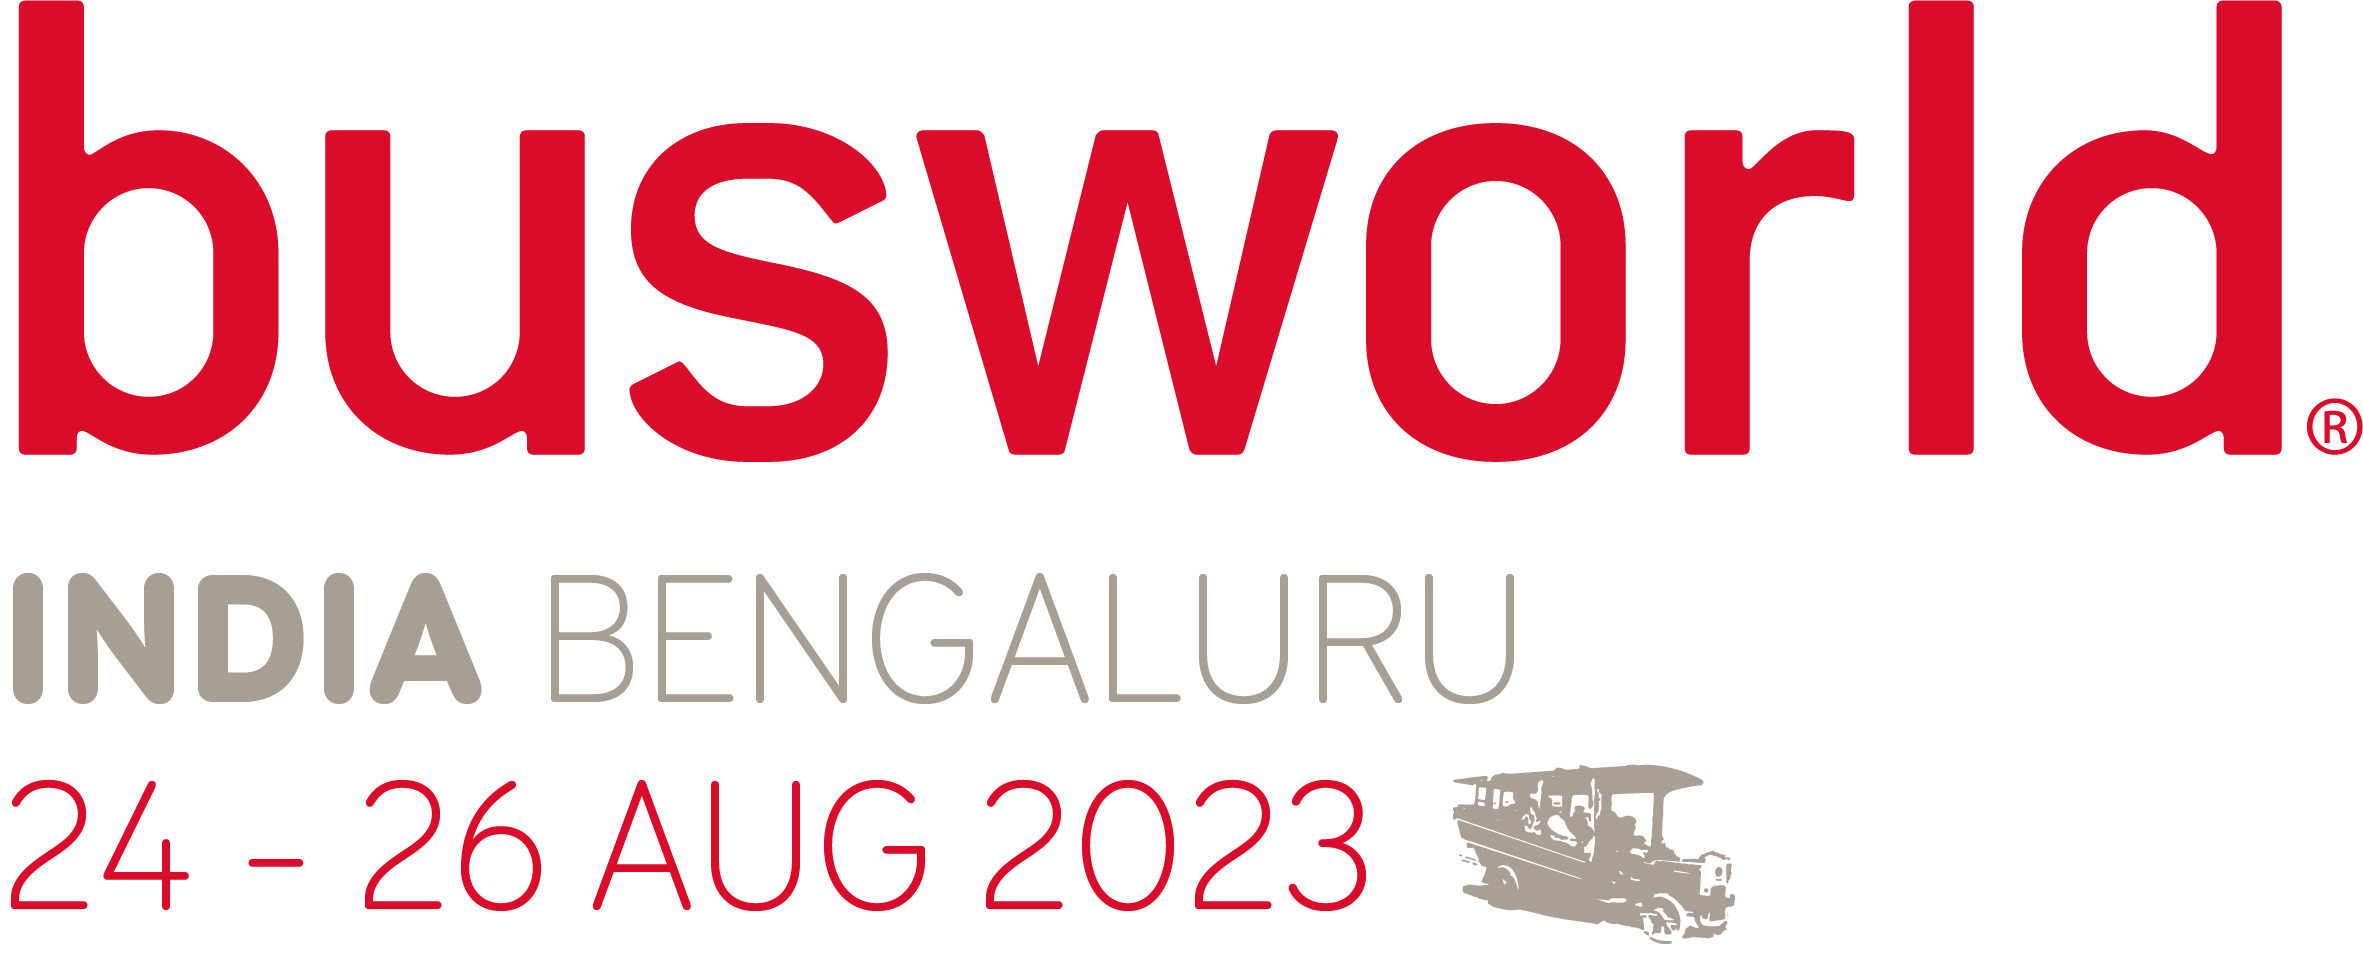 Busworld India 2023 logo